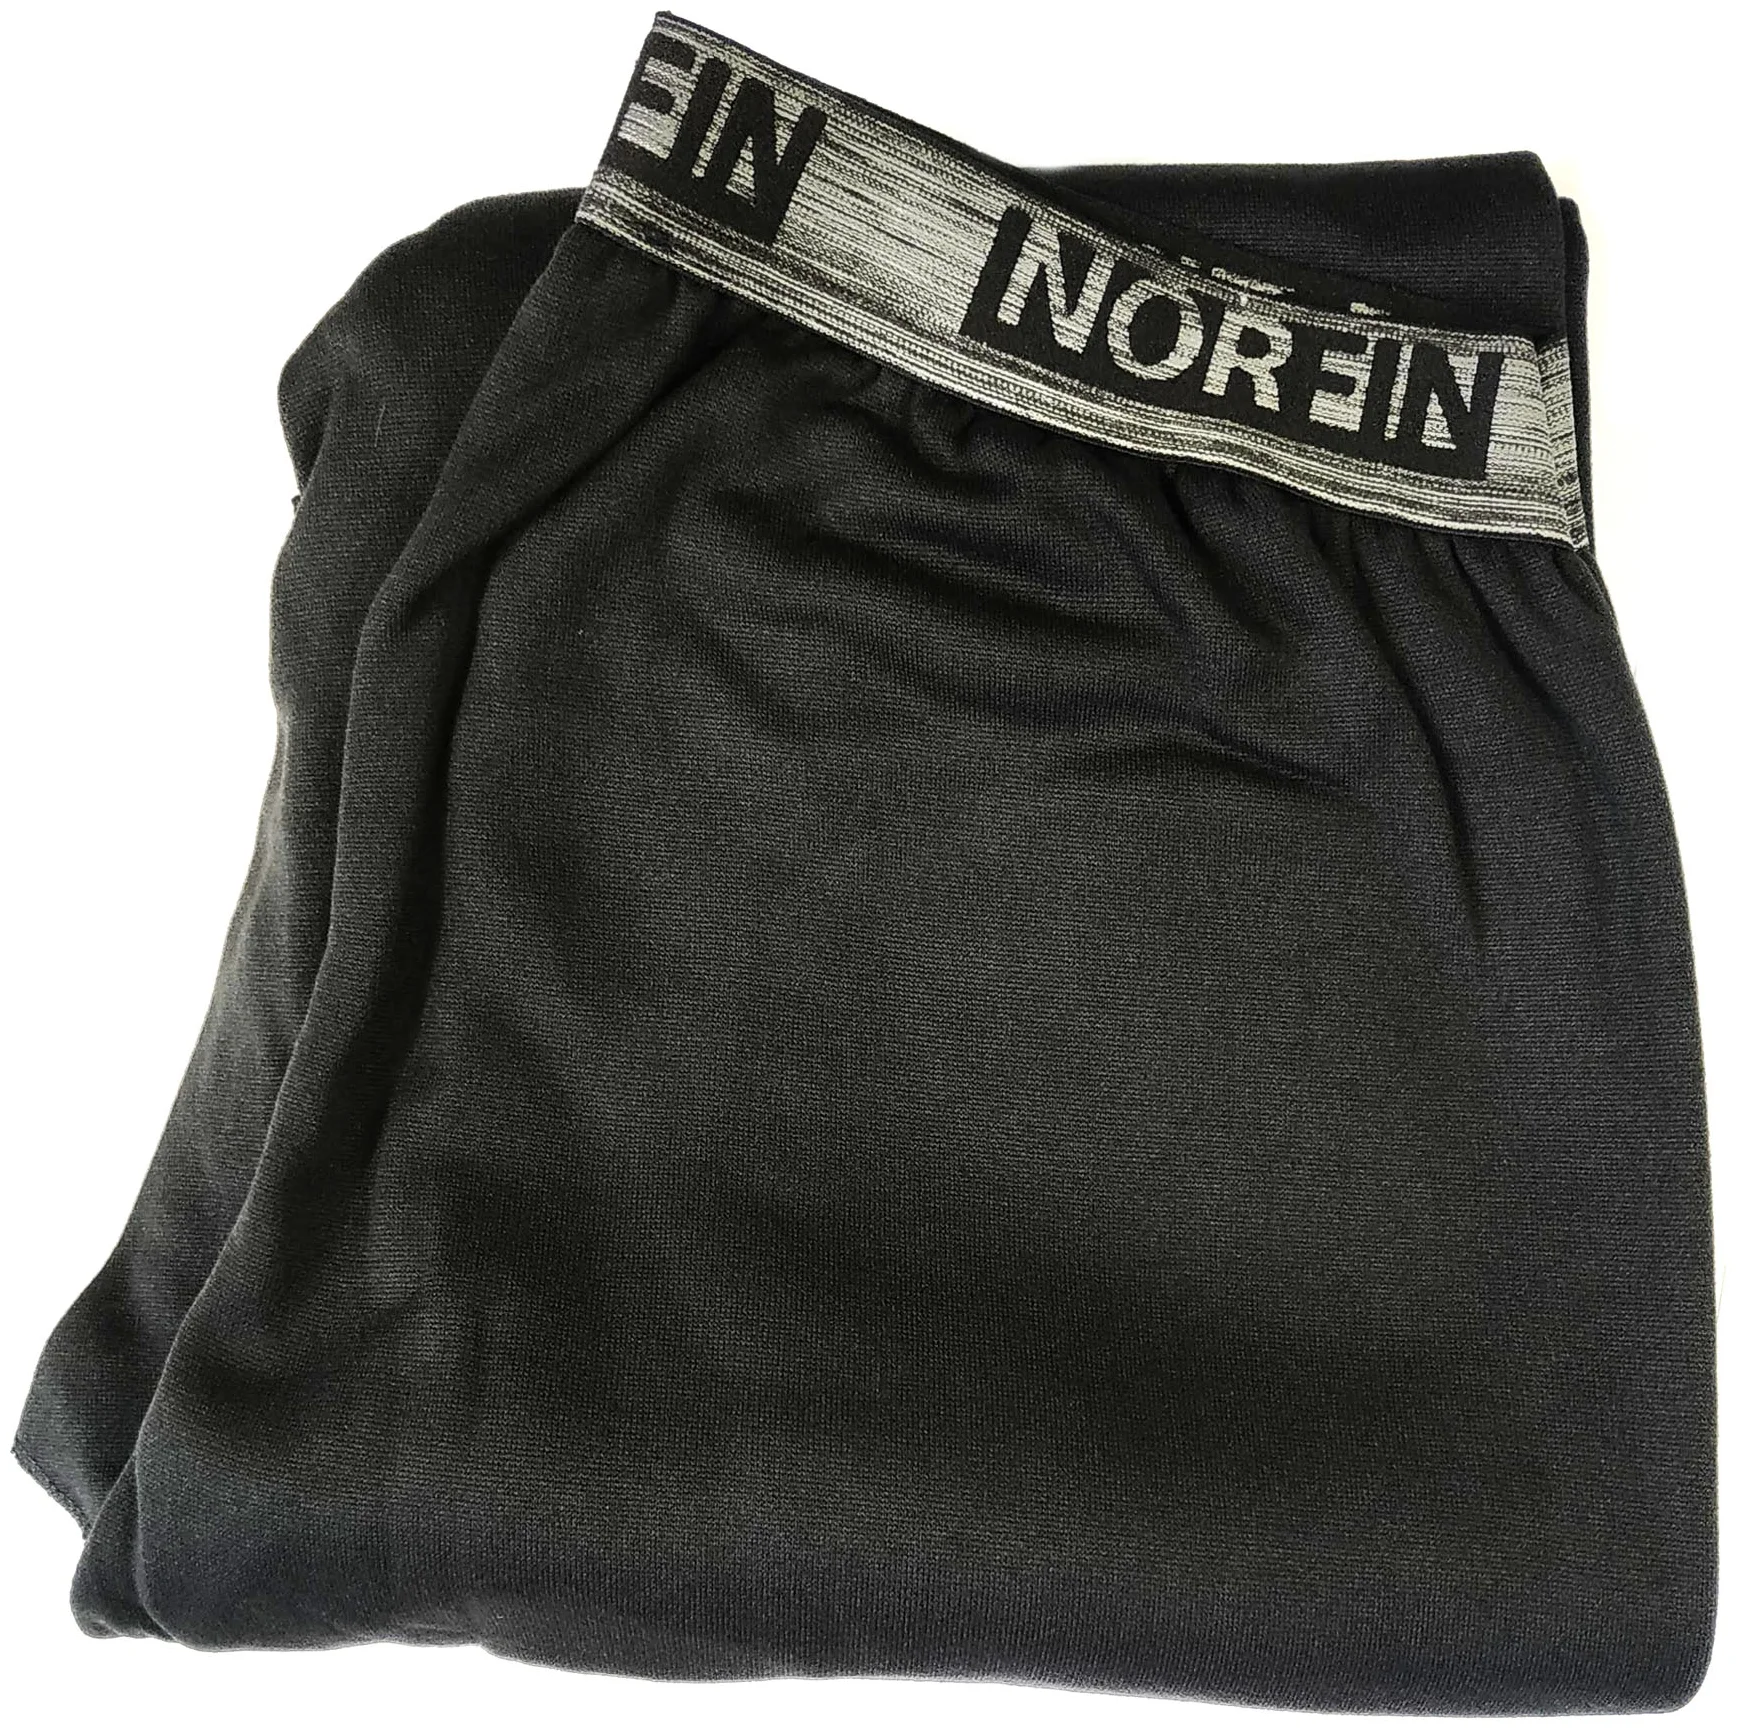 NORFIN Scandic Comfort - особенности: влагоотводящий материал, плоские швы